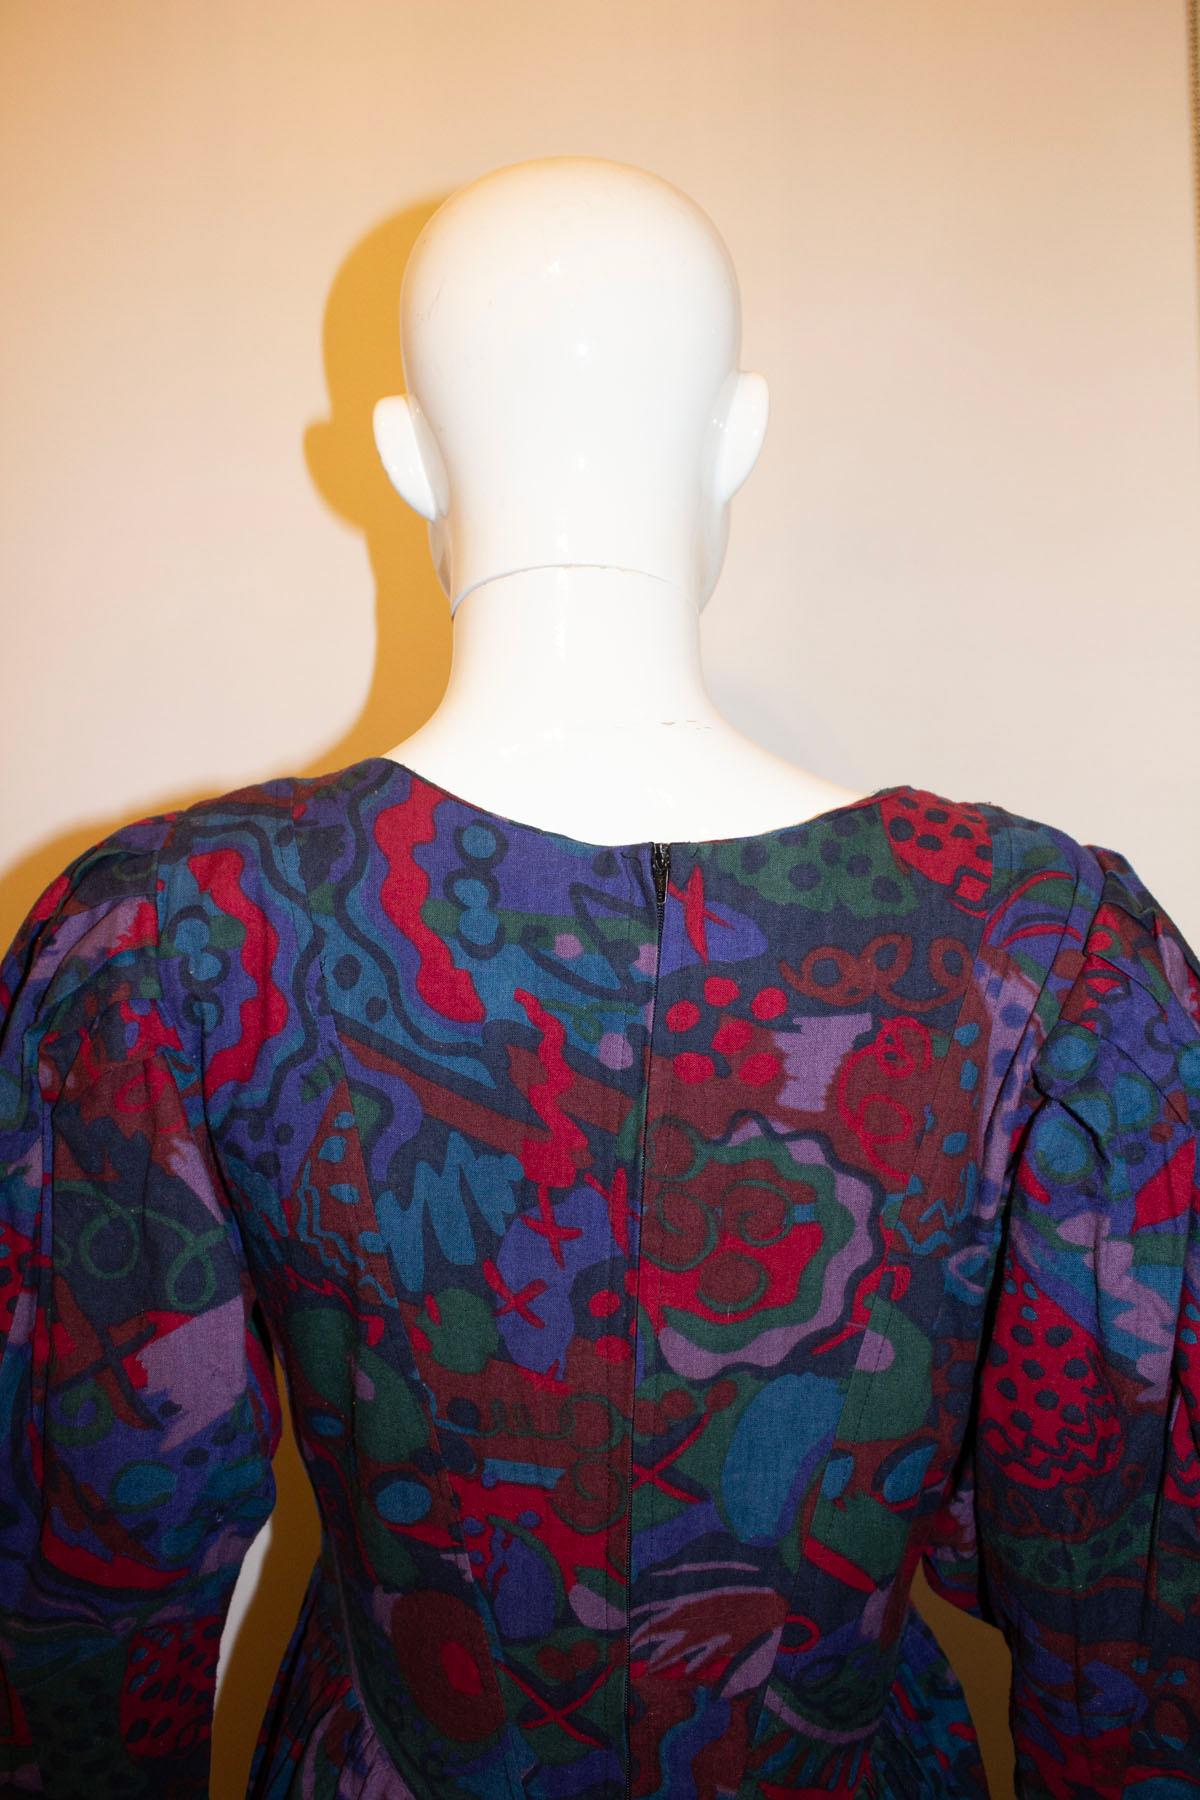 Une magnifique robe vintage multicolore, facile à porter, de Droopy and  Les marrons. Datant des années 1980, la robe est boutonnée sur le devant, possède des manches complètes avec poignets boutonnés et des fronces au niveau de la taille. Il est